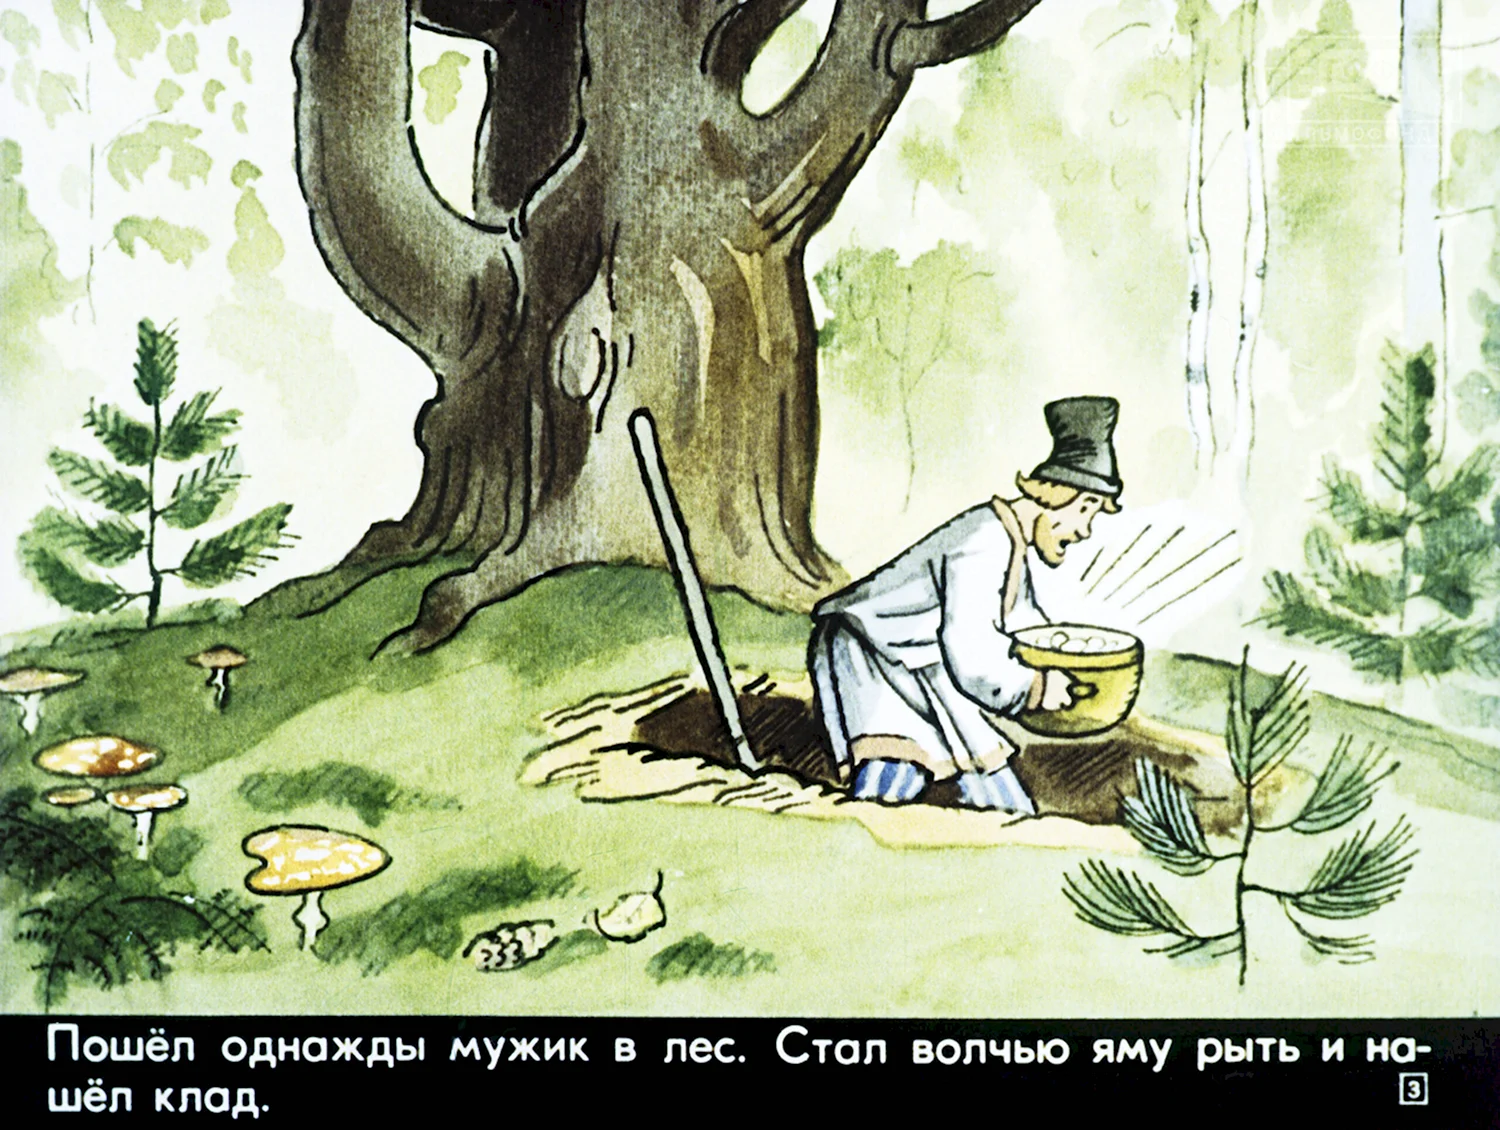 Иллюстрация к русской народной сказке клад